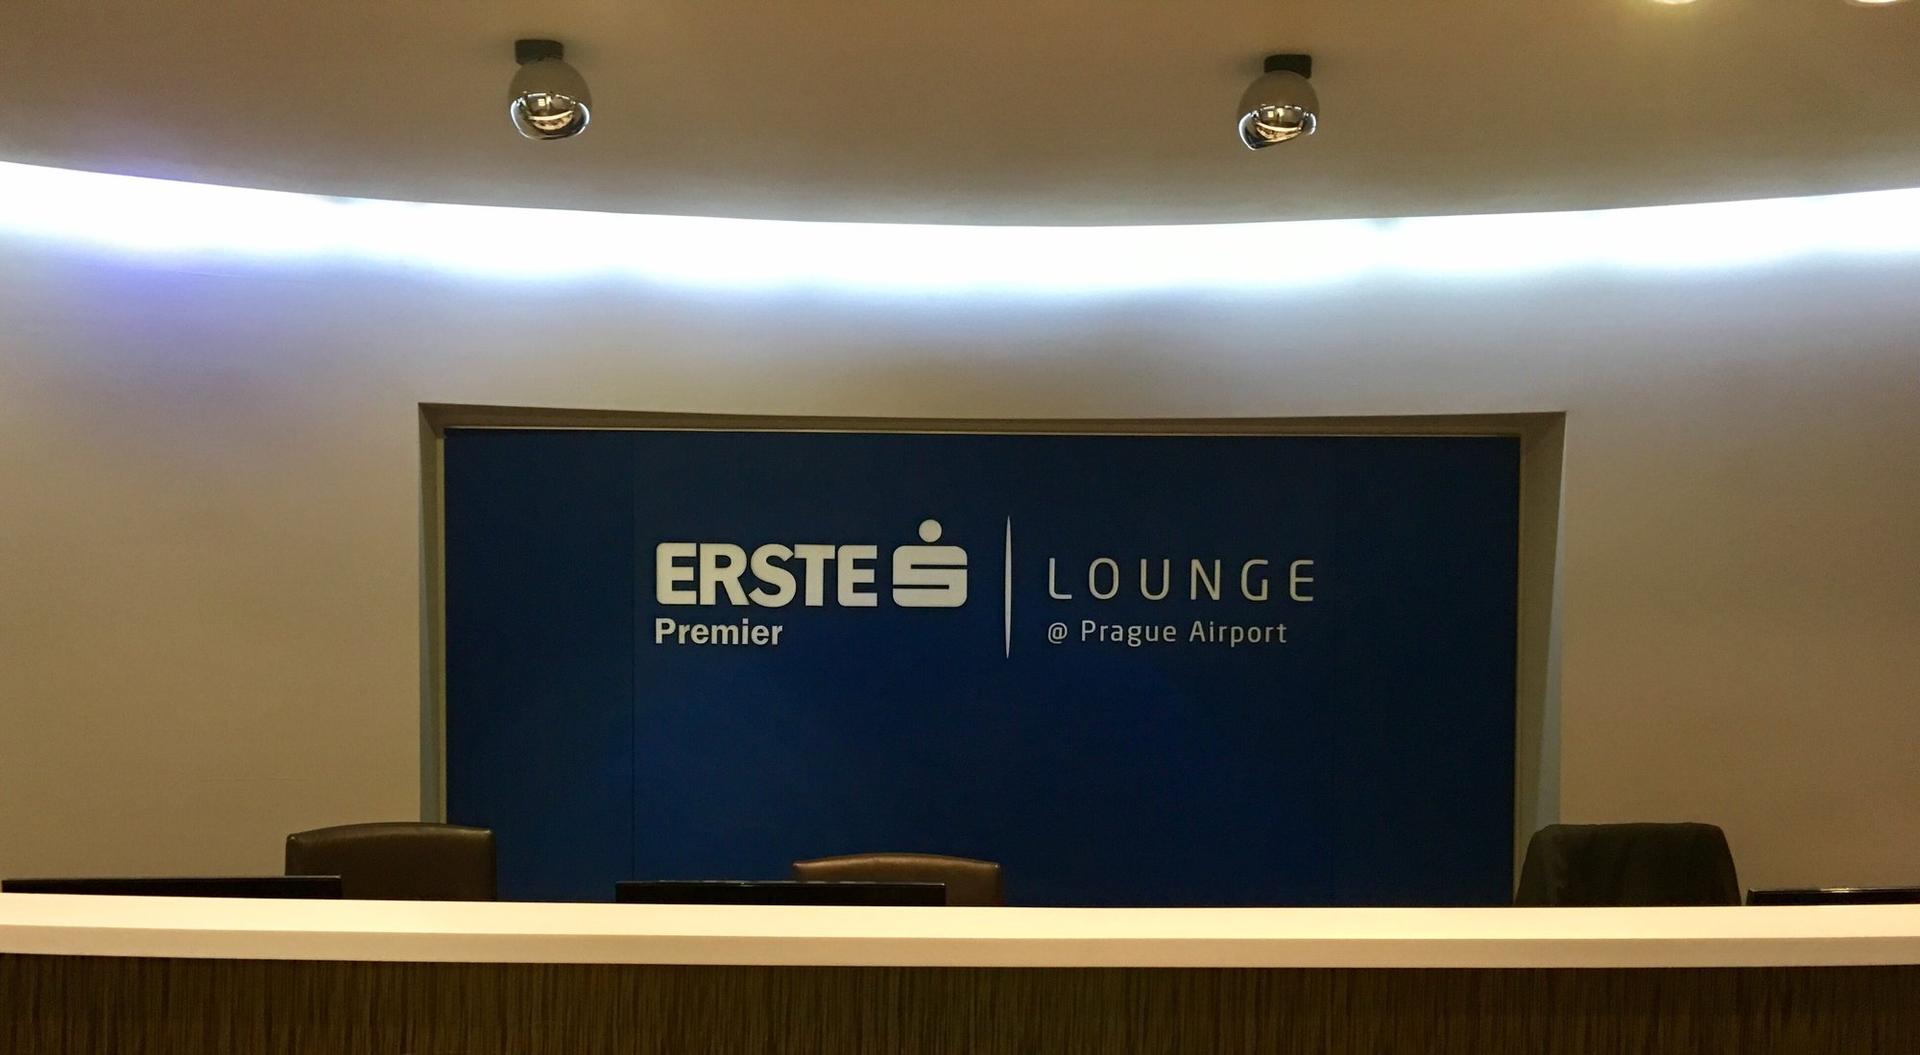 Erste Premier Lounge image 13 of 72